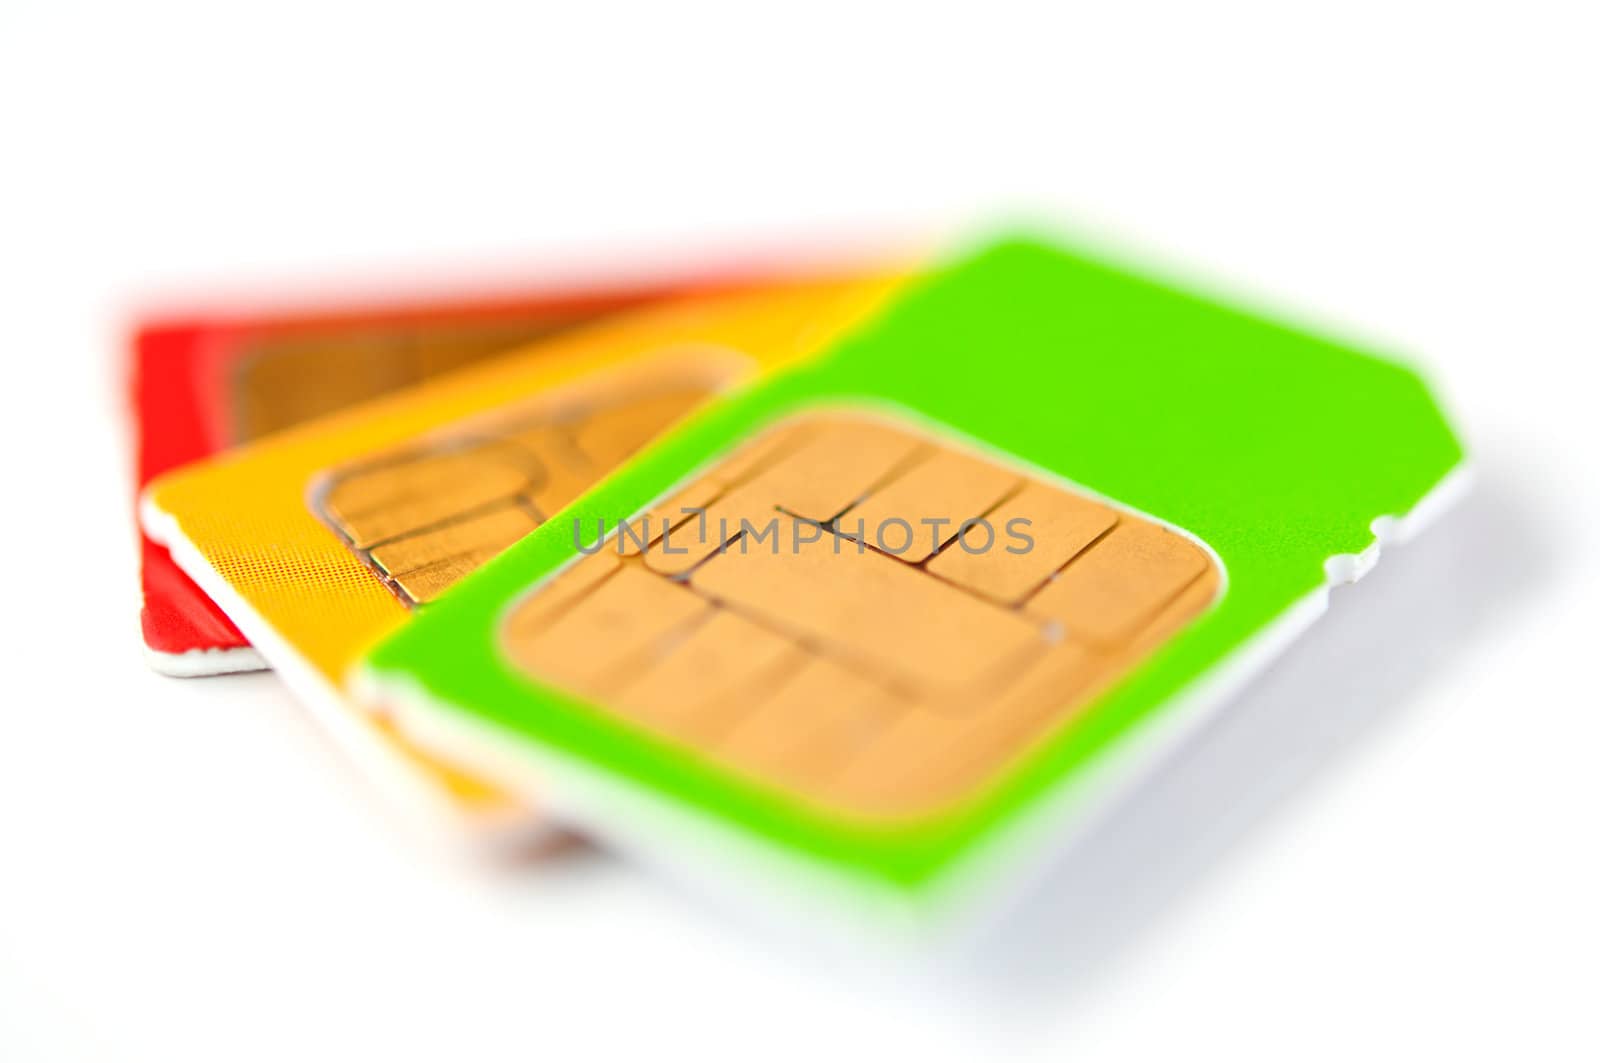 SIM cards by bashta